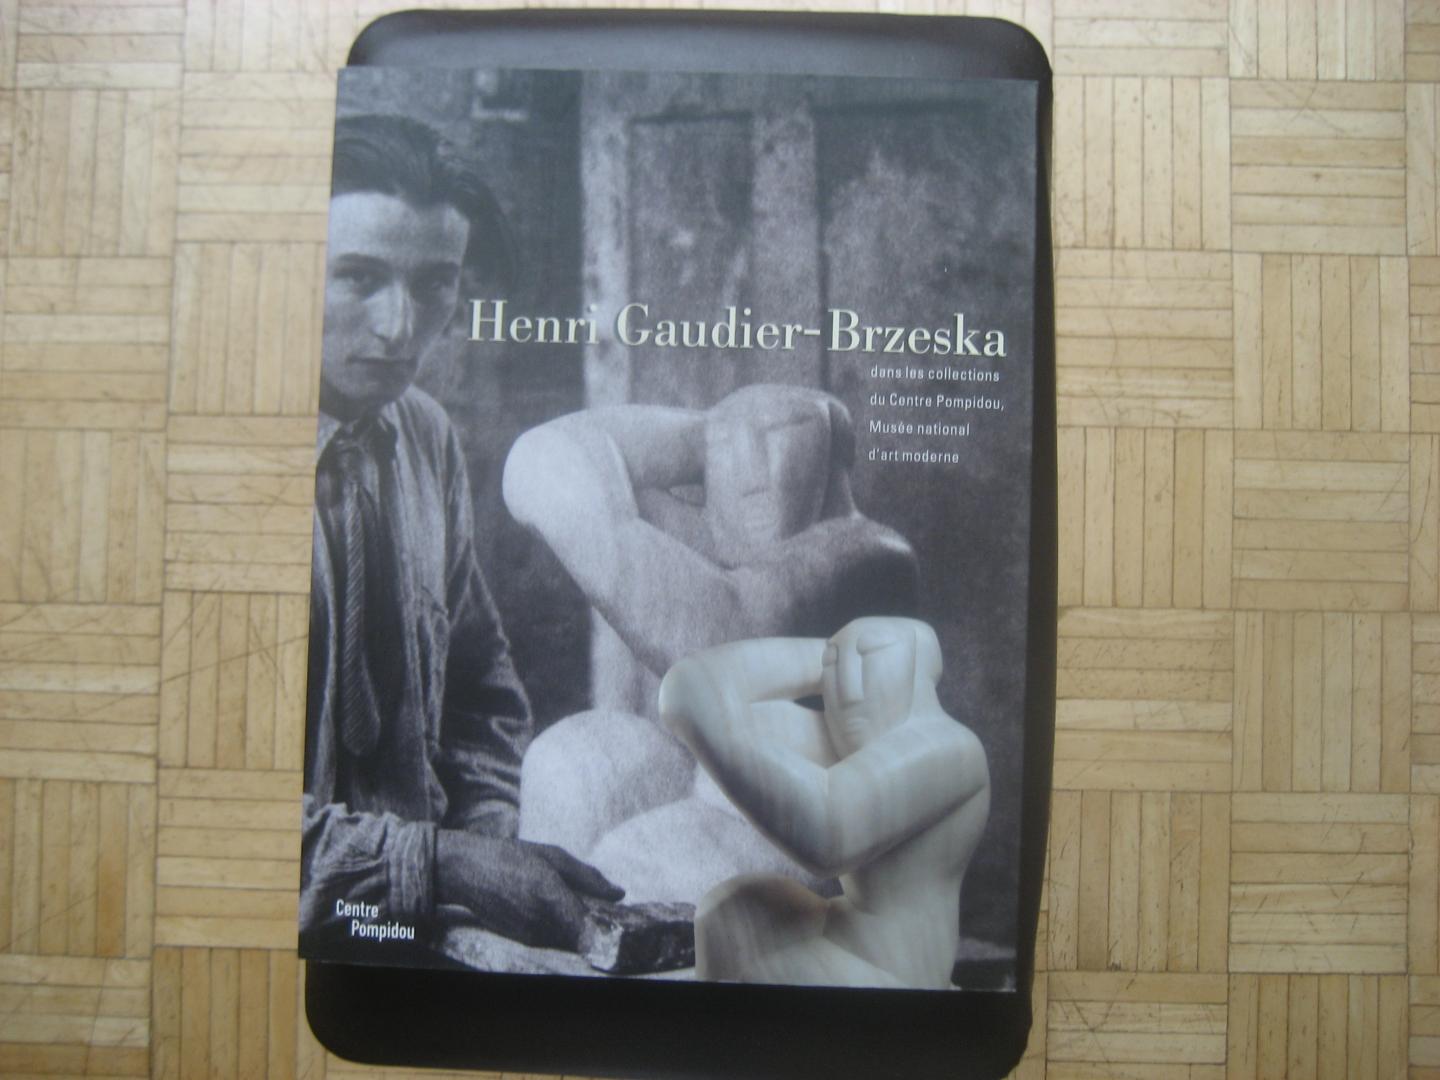 Henri Gaudier-Brzeska - Henri Gaudier-Brzeska dans les collections du Centre Pompidou